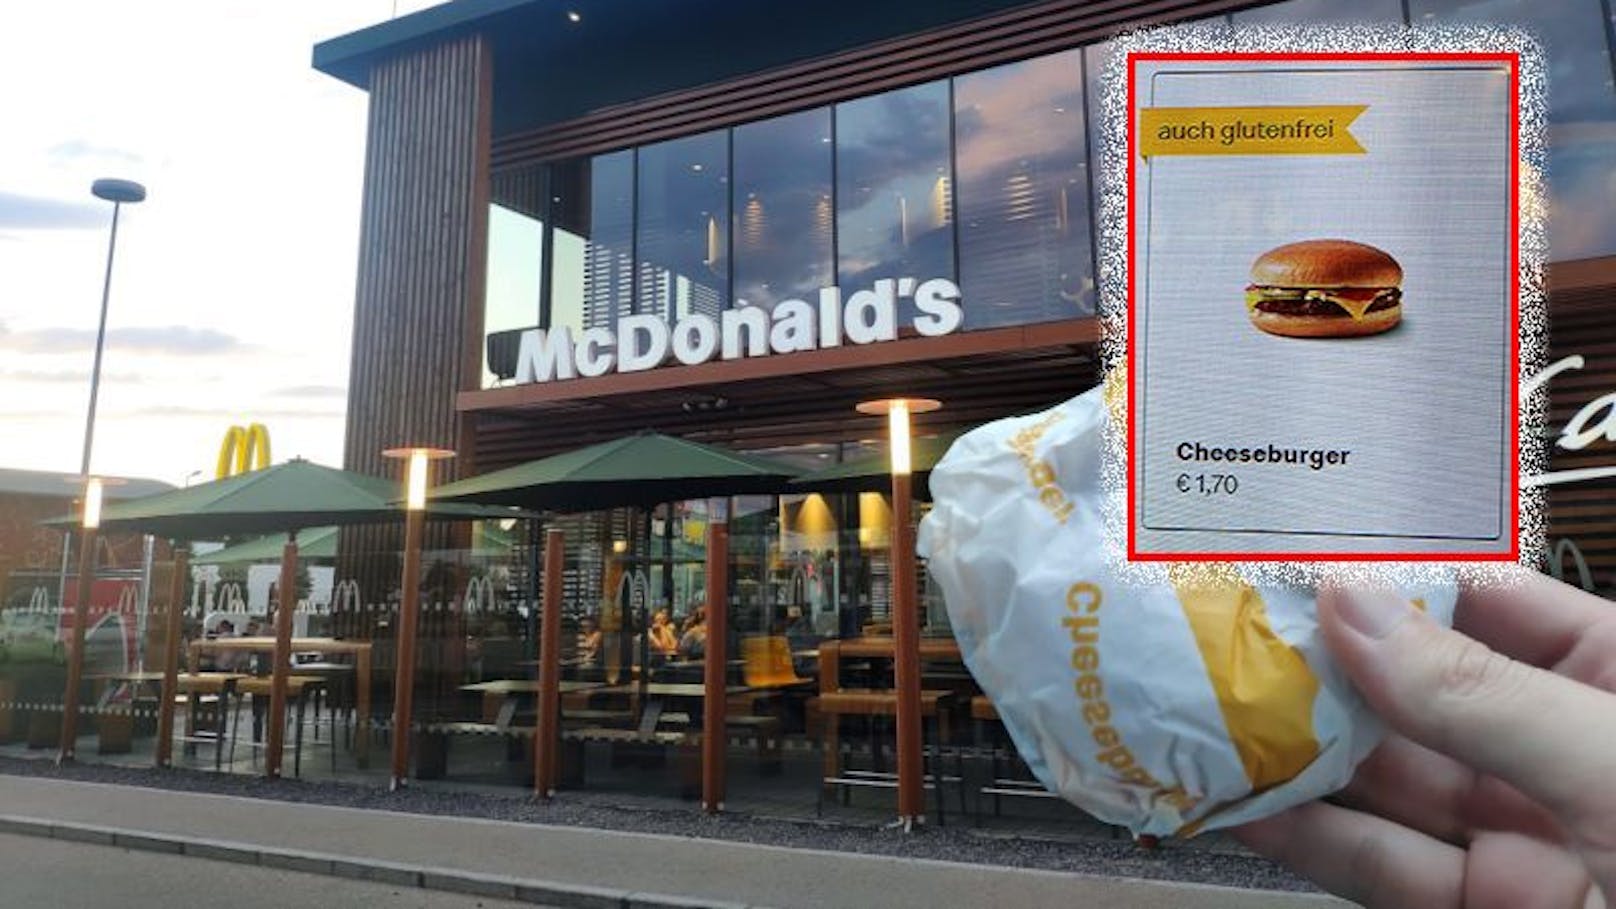 Der Cheeseburger kostet in Schwechat schon stolze 1,70 Euro.